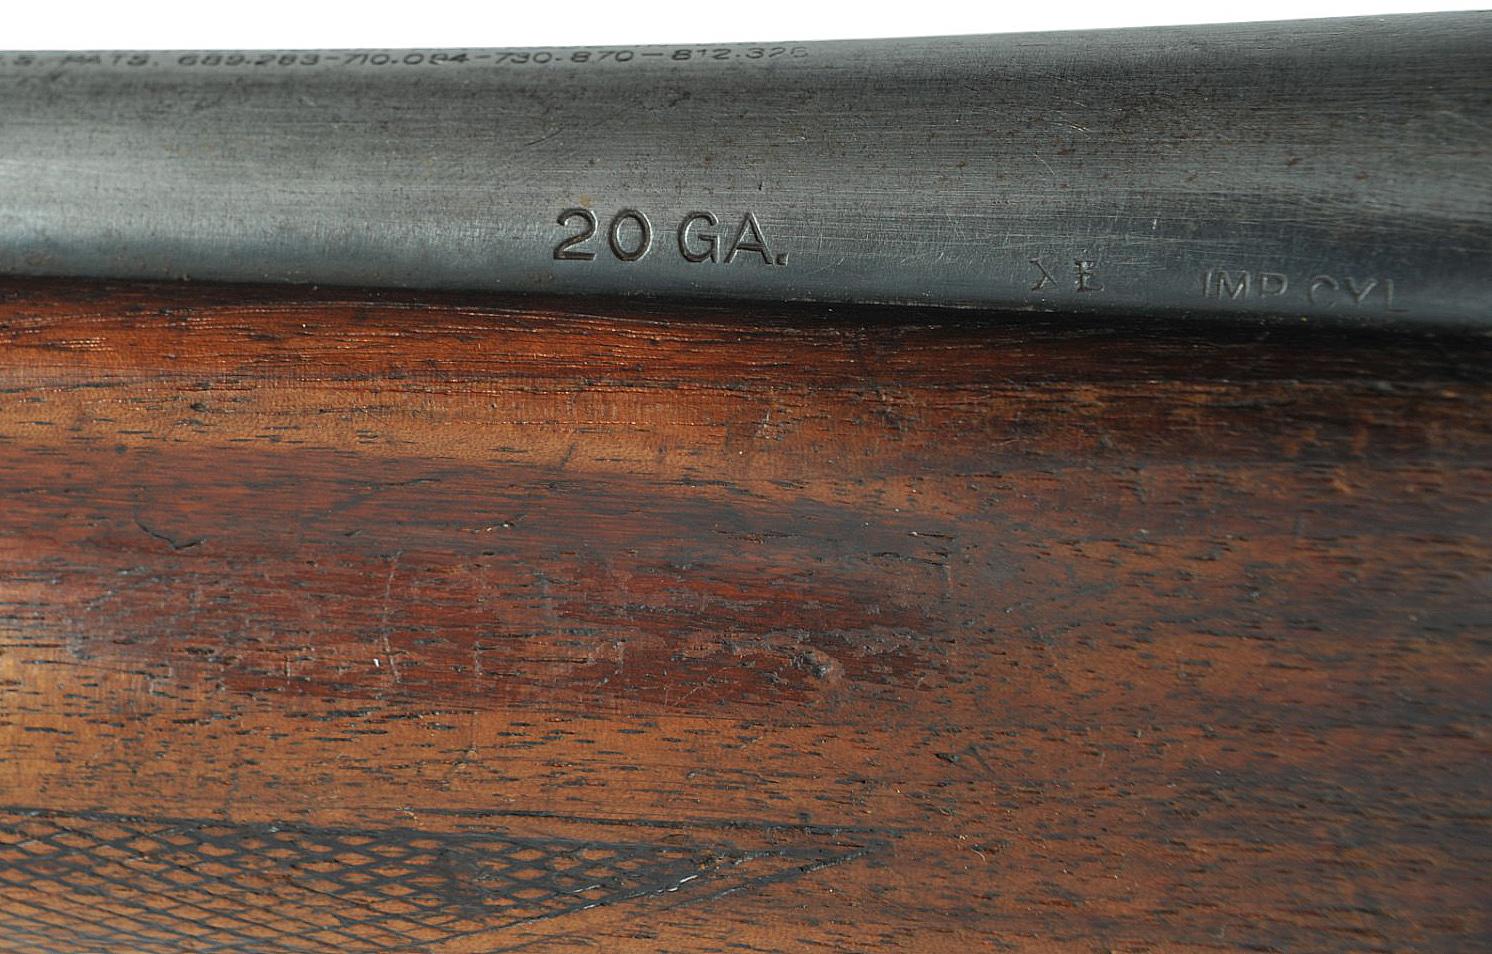 Remington 'Sportsman' 20 Gauge Sem-auto Shotgun FFL Required: 11621  (VDM1)